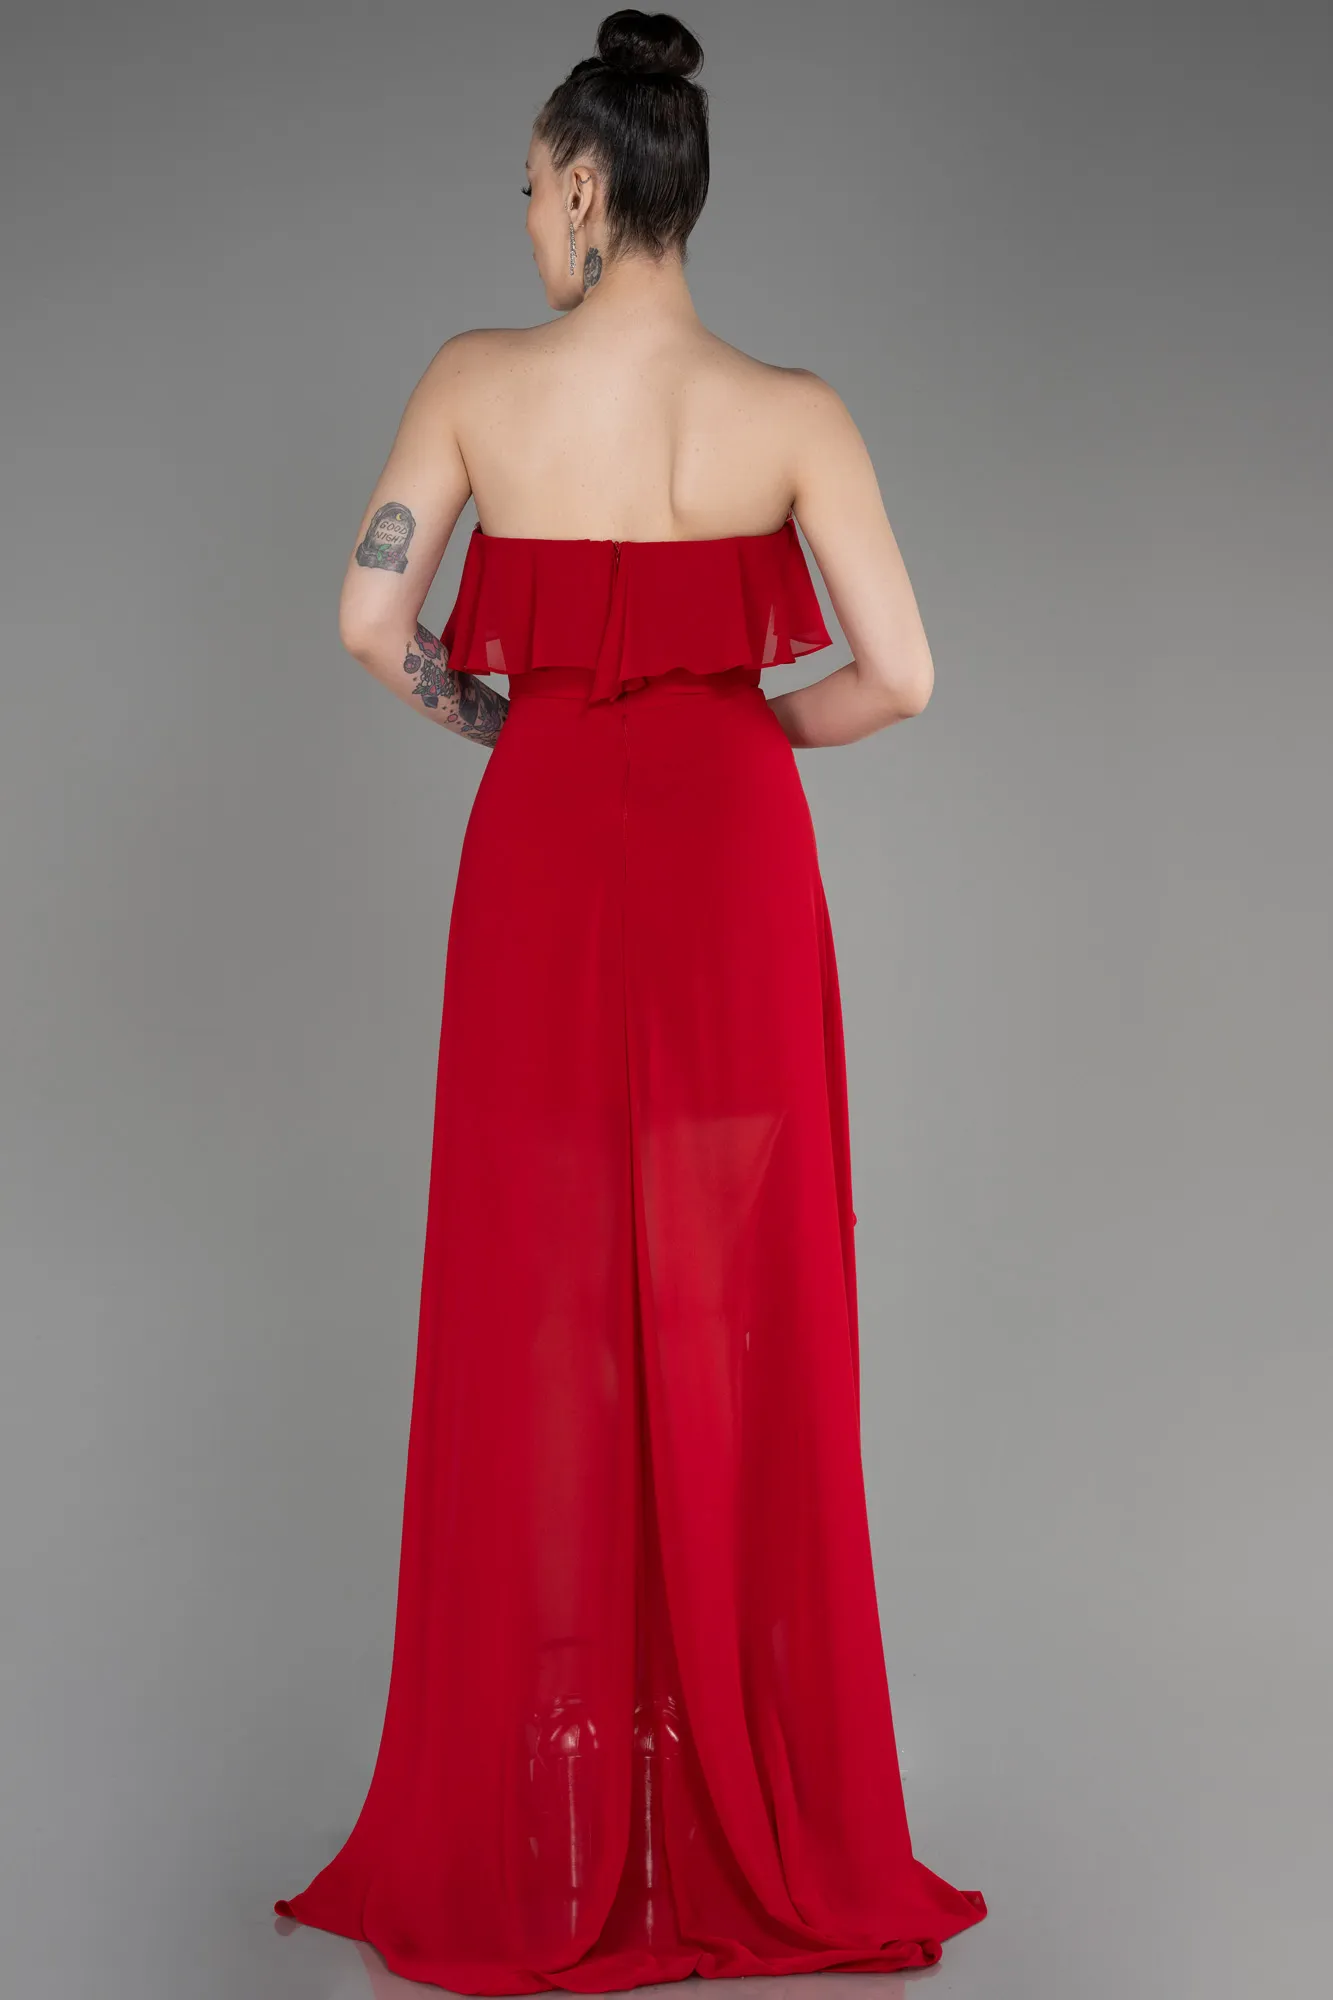 Red-Strapless Long Chiffon Prom Dress ABU3838